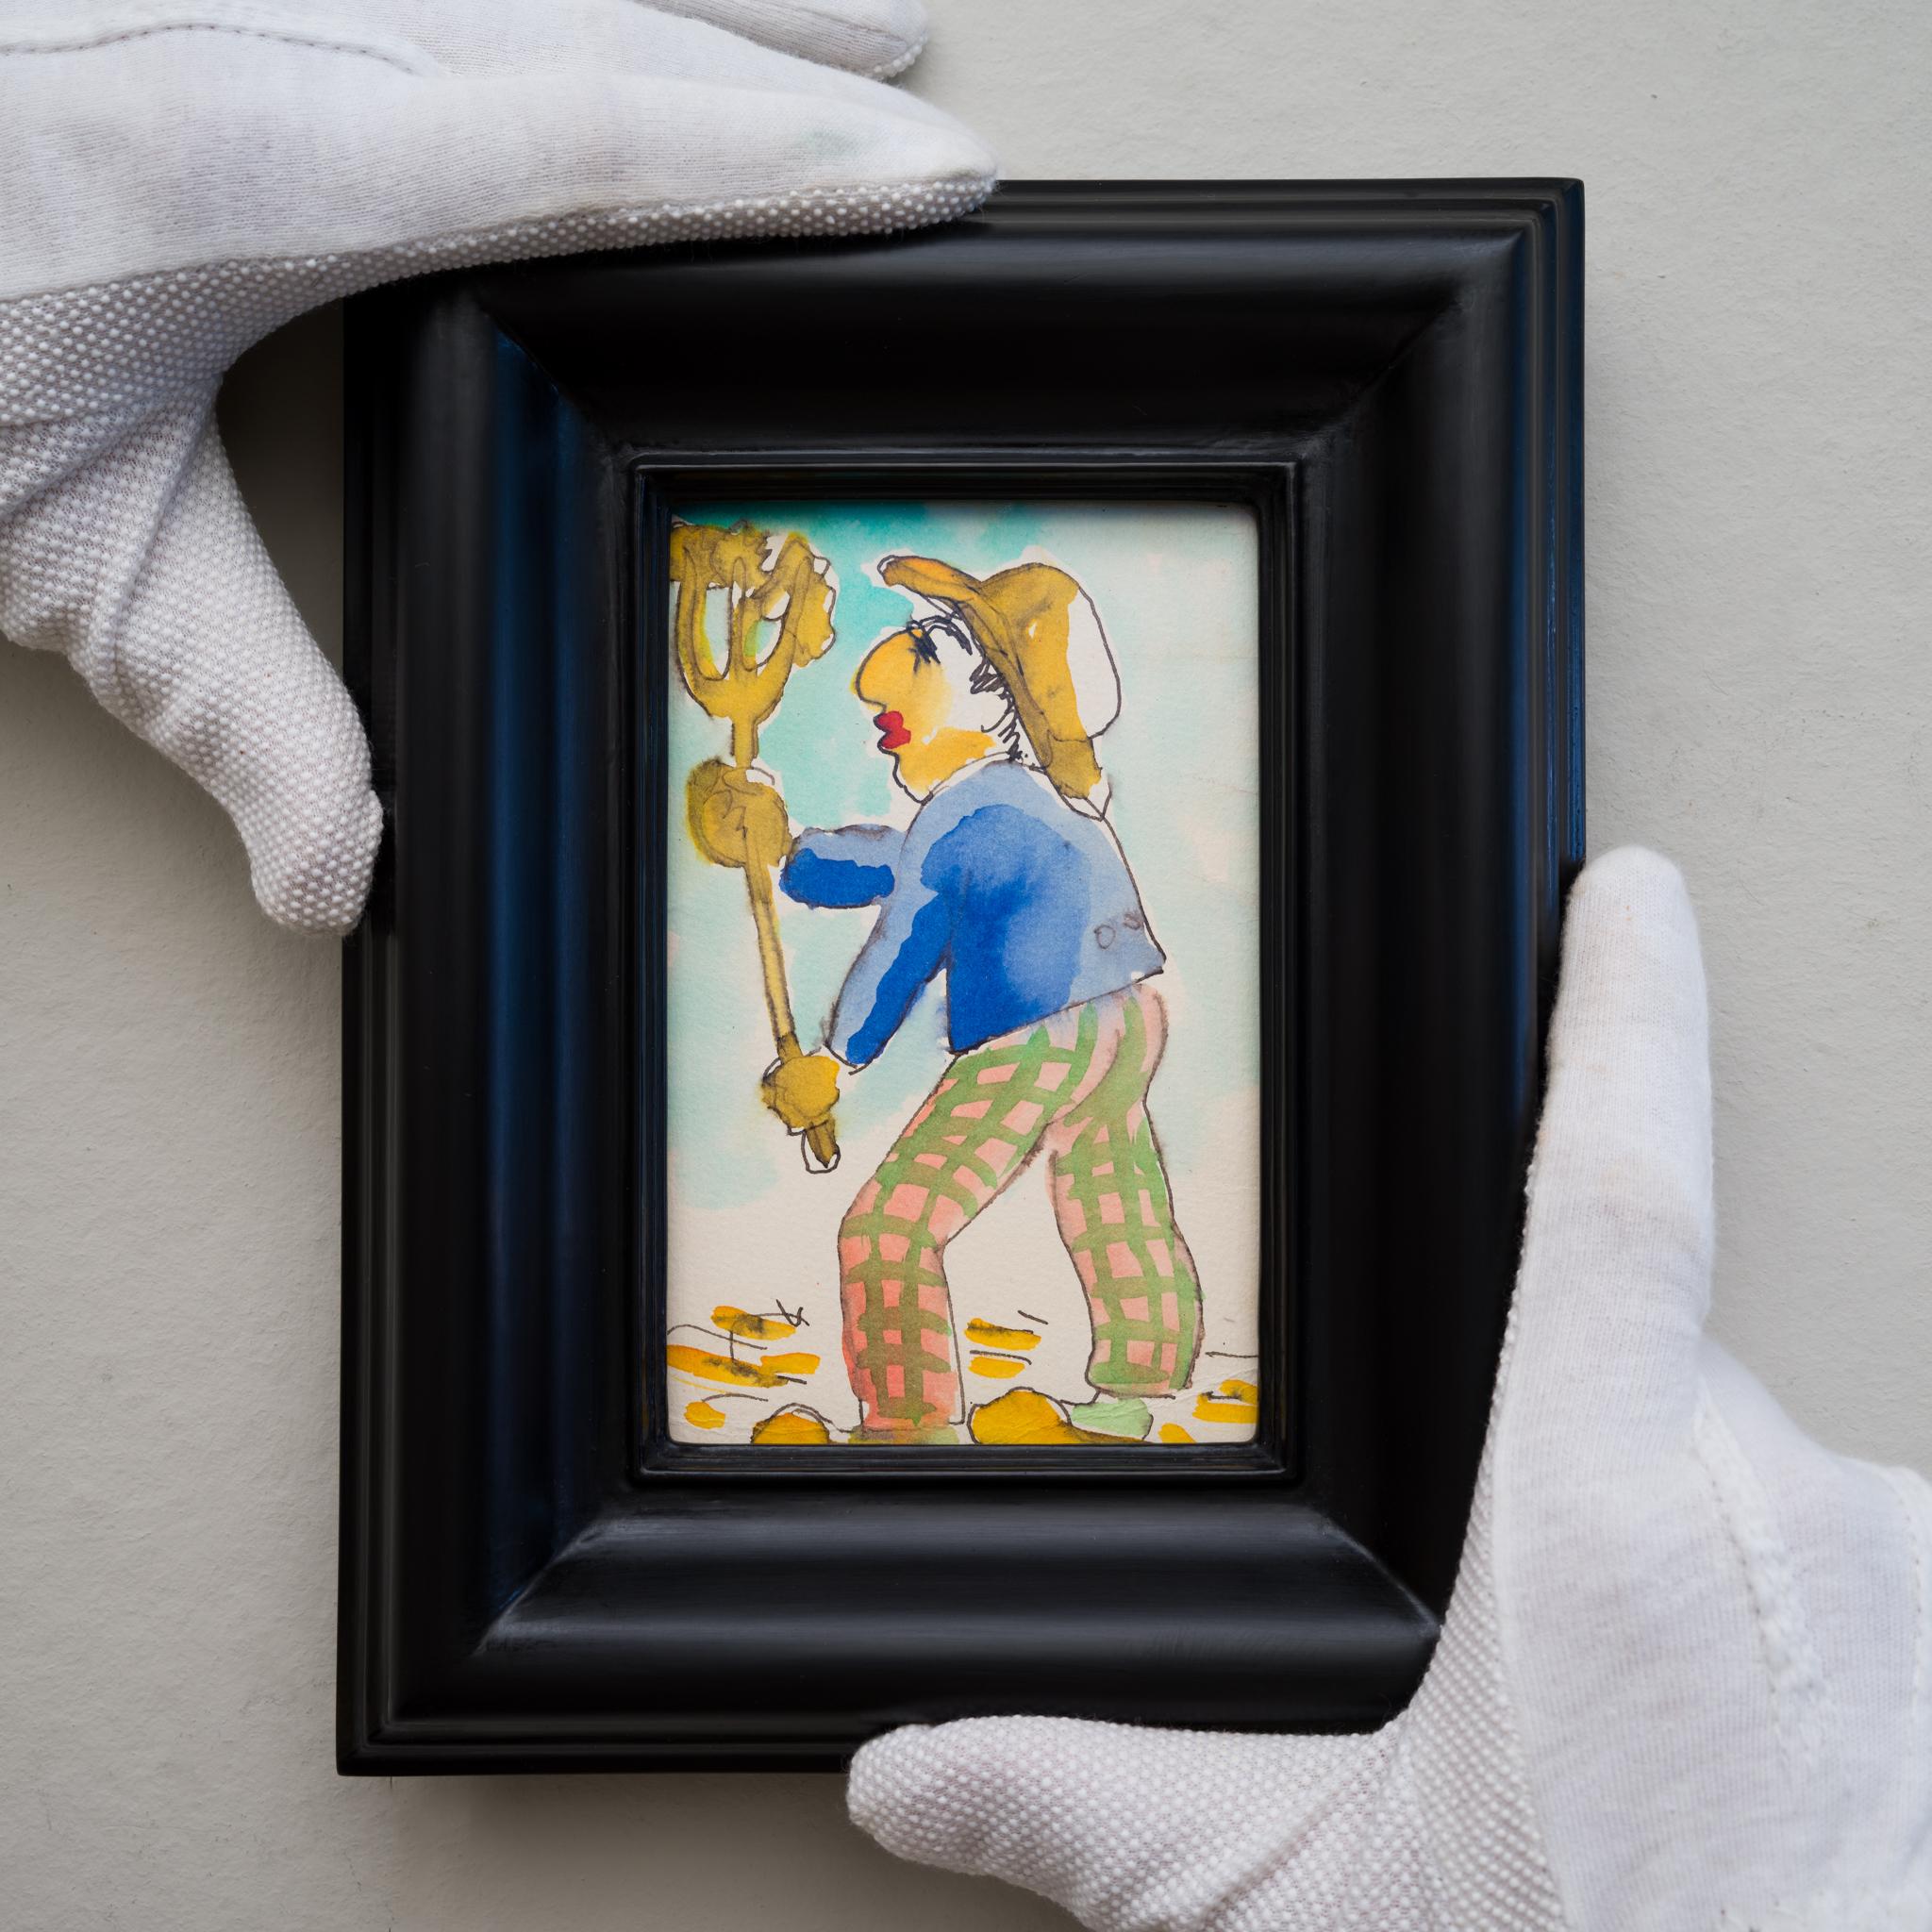 Isaac Grünewald (1889-1946) Schweden

Postkartenplakat mit der Darstellung eines Bauern mit seiner dreizackigen Krüge

Aquarell auf einer Postkarte
Abmessungen: 14 cm x 9 cm (5,51 x 3,54 Zoll)
Rahmen: 22,5 cm x 17,5 cm (8,86 x 6,89